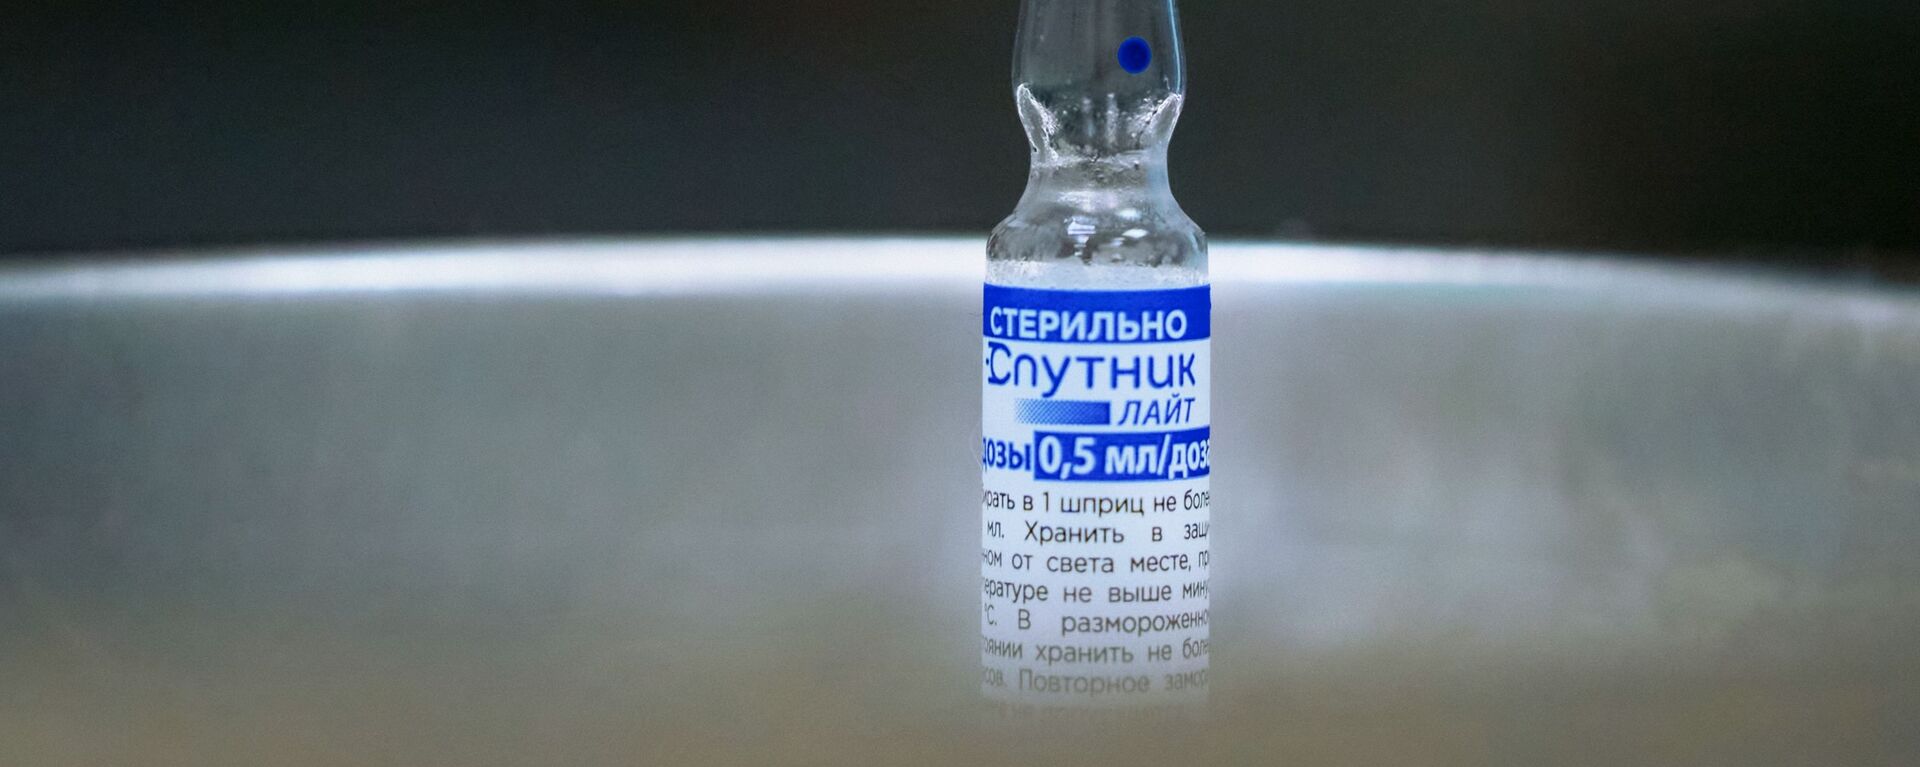 امارات استفاده از واکسن روسی اسپوتنیک لایت را تأیید کرد - اسپوتنیک افغانستان  , 1920, 30.01.2022